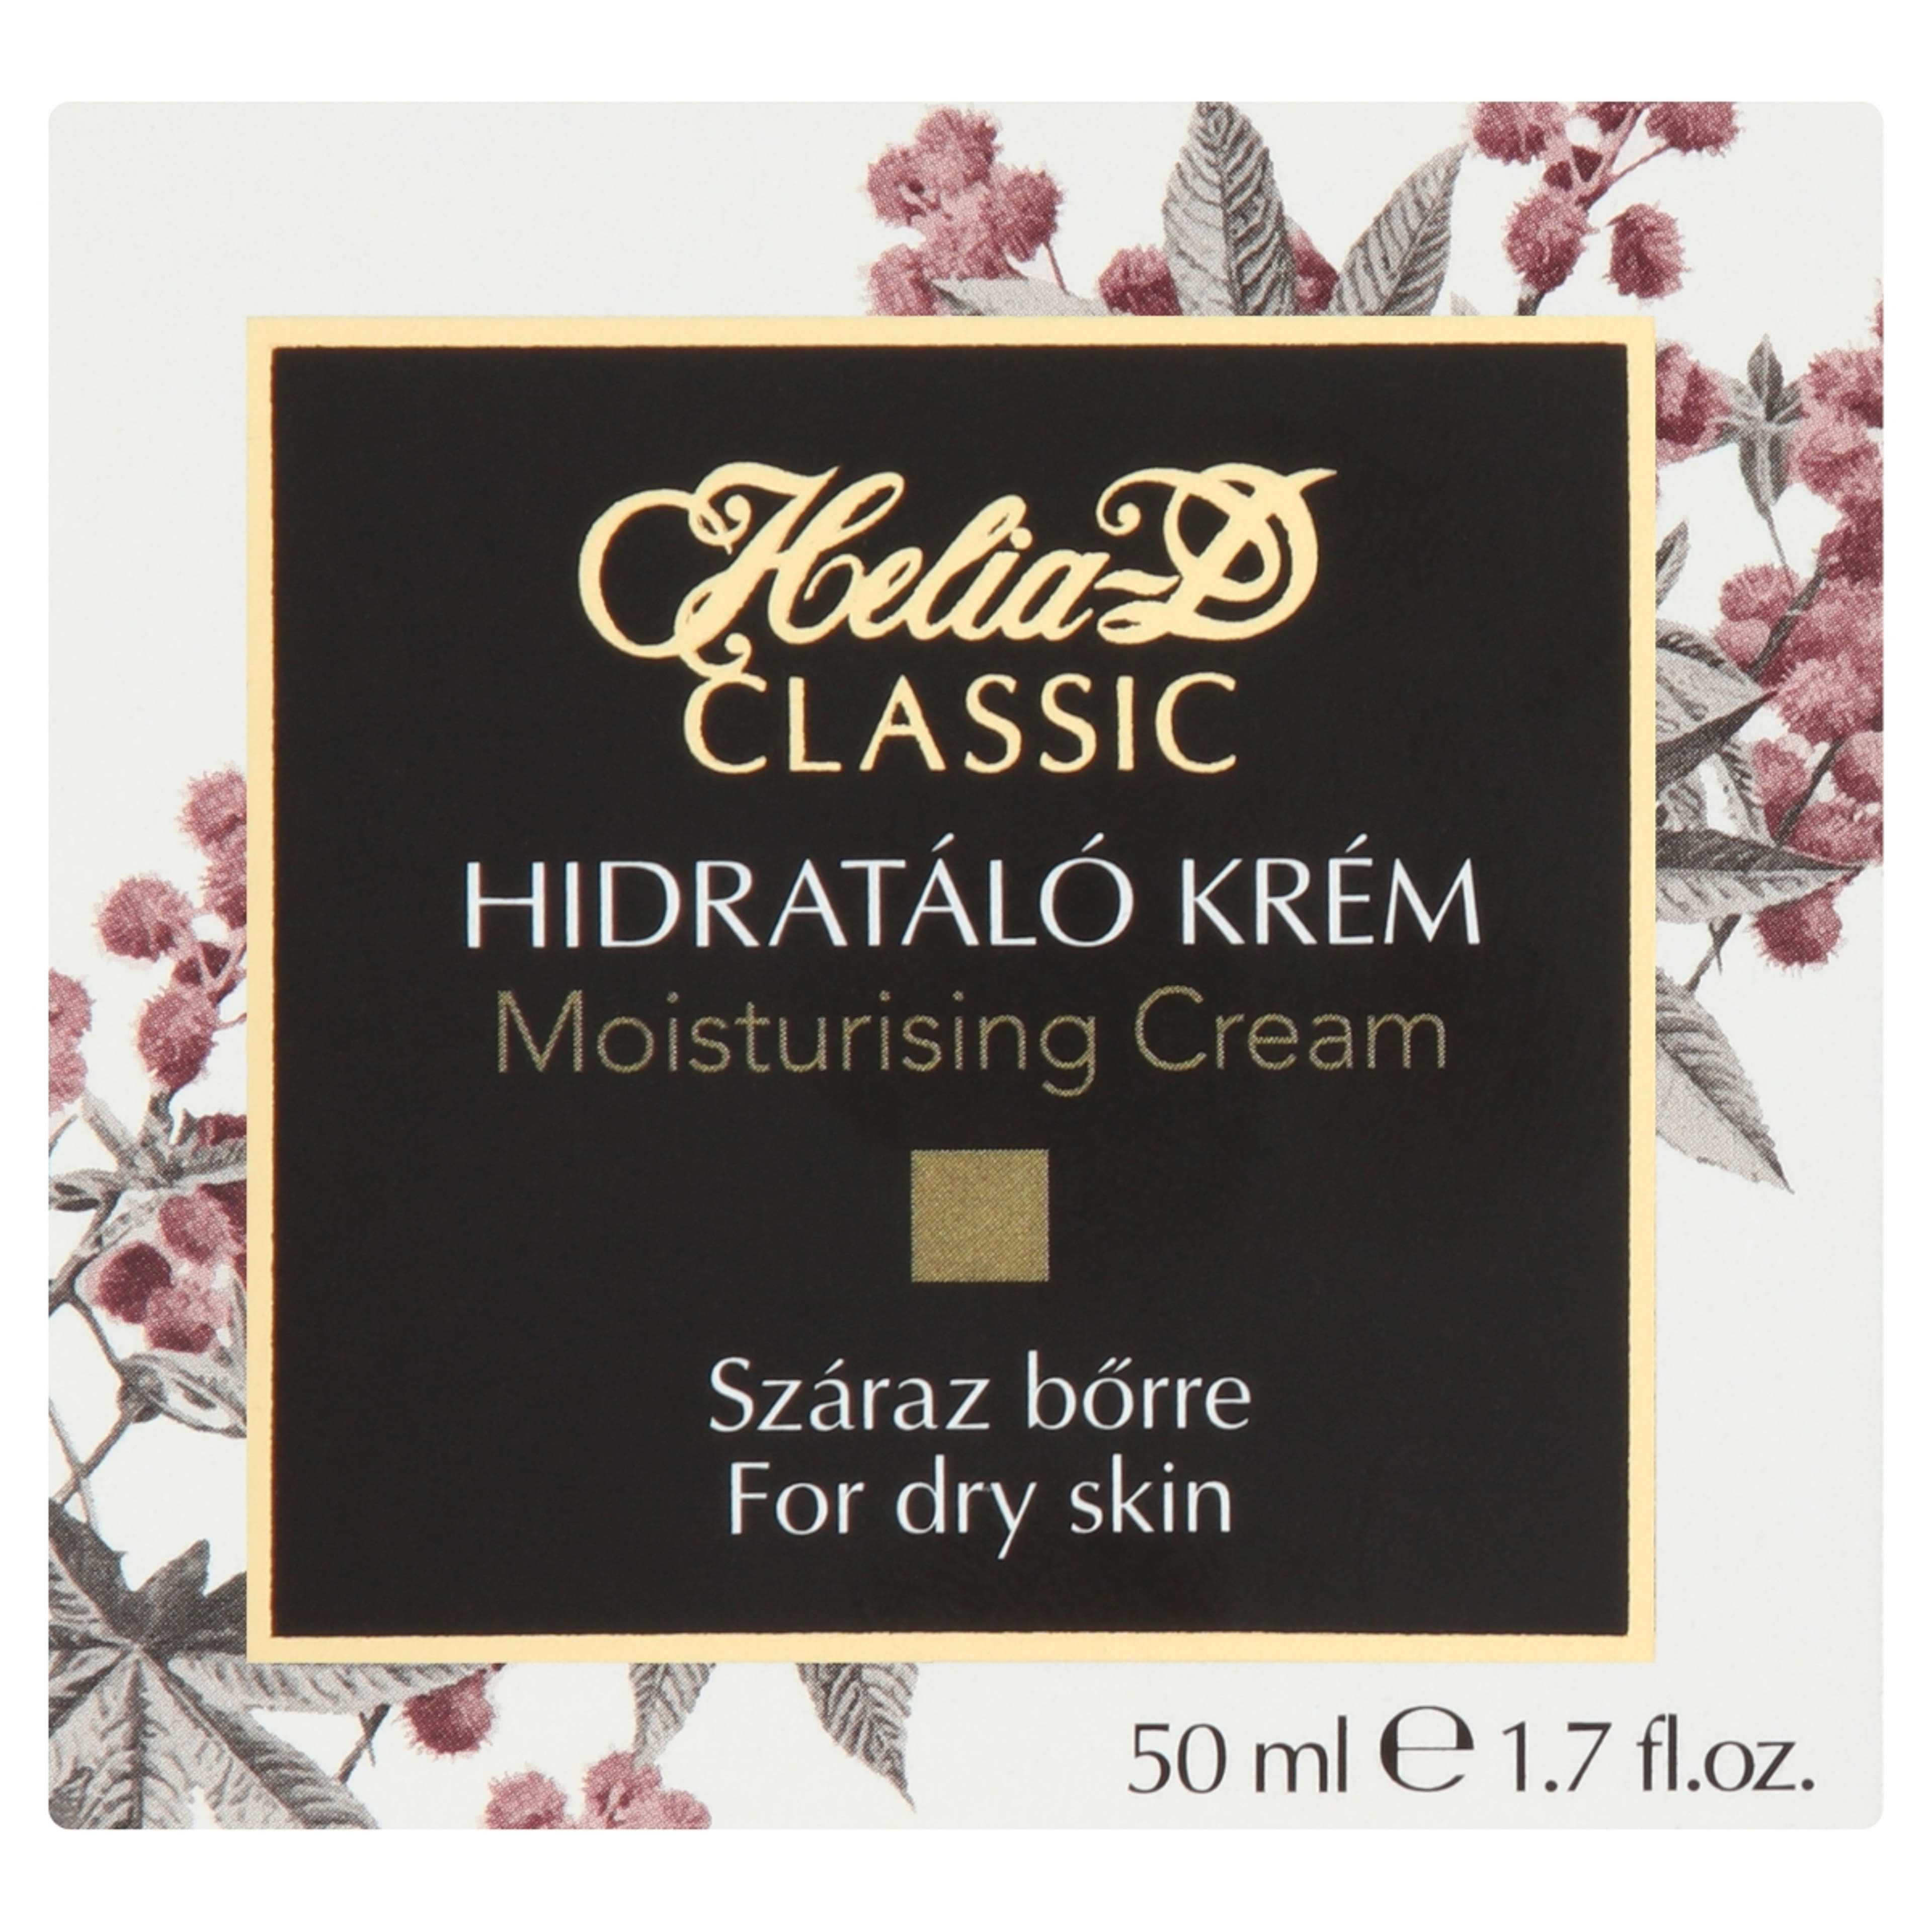 Helia-D Classic hidratáló krém száraz bőrre - 50 ml